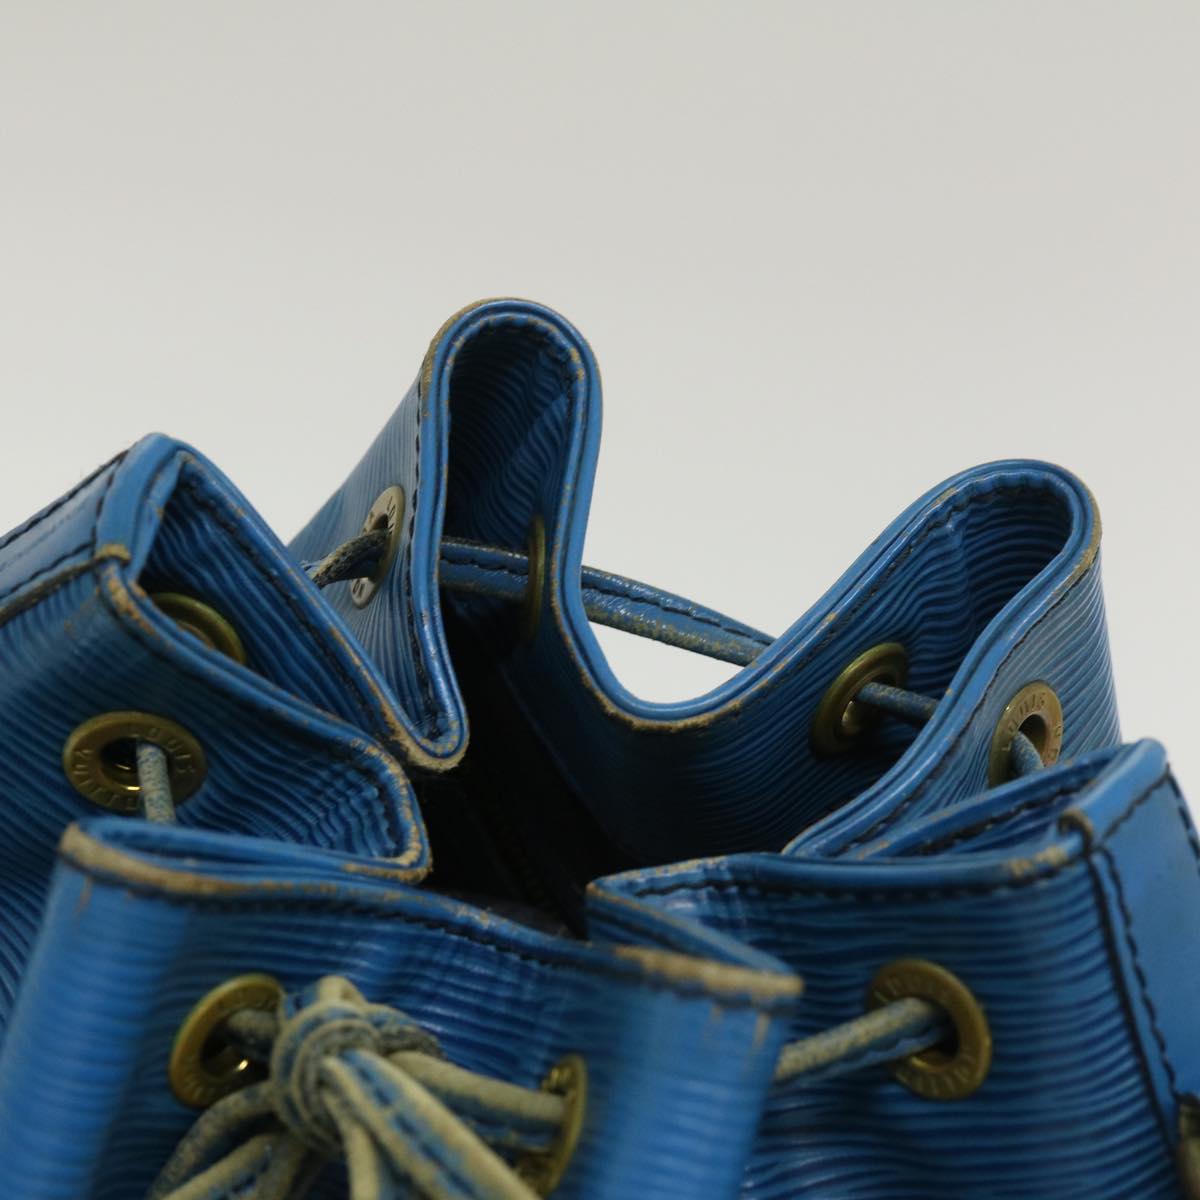 LOUIS VUITTON Epi Petit Noe Shoulder Bag Blue M44105 LV Auth ds528